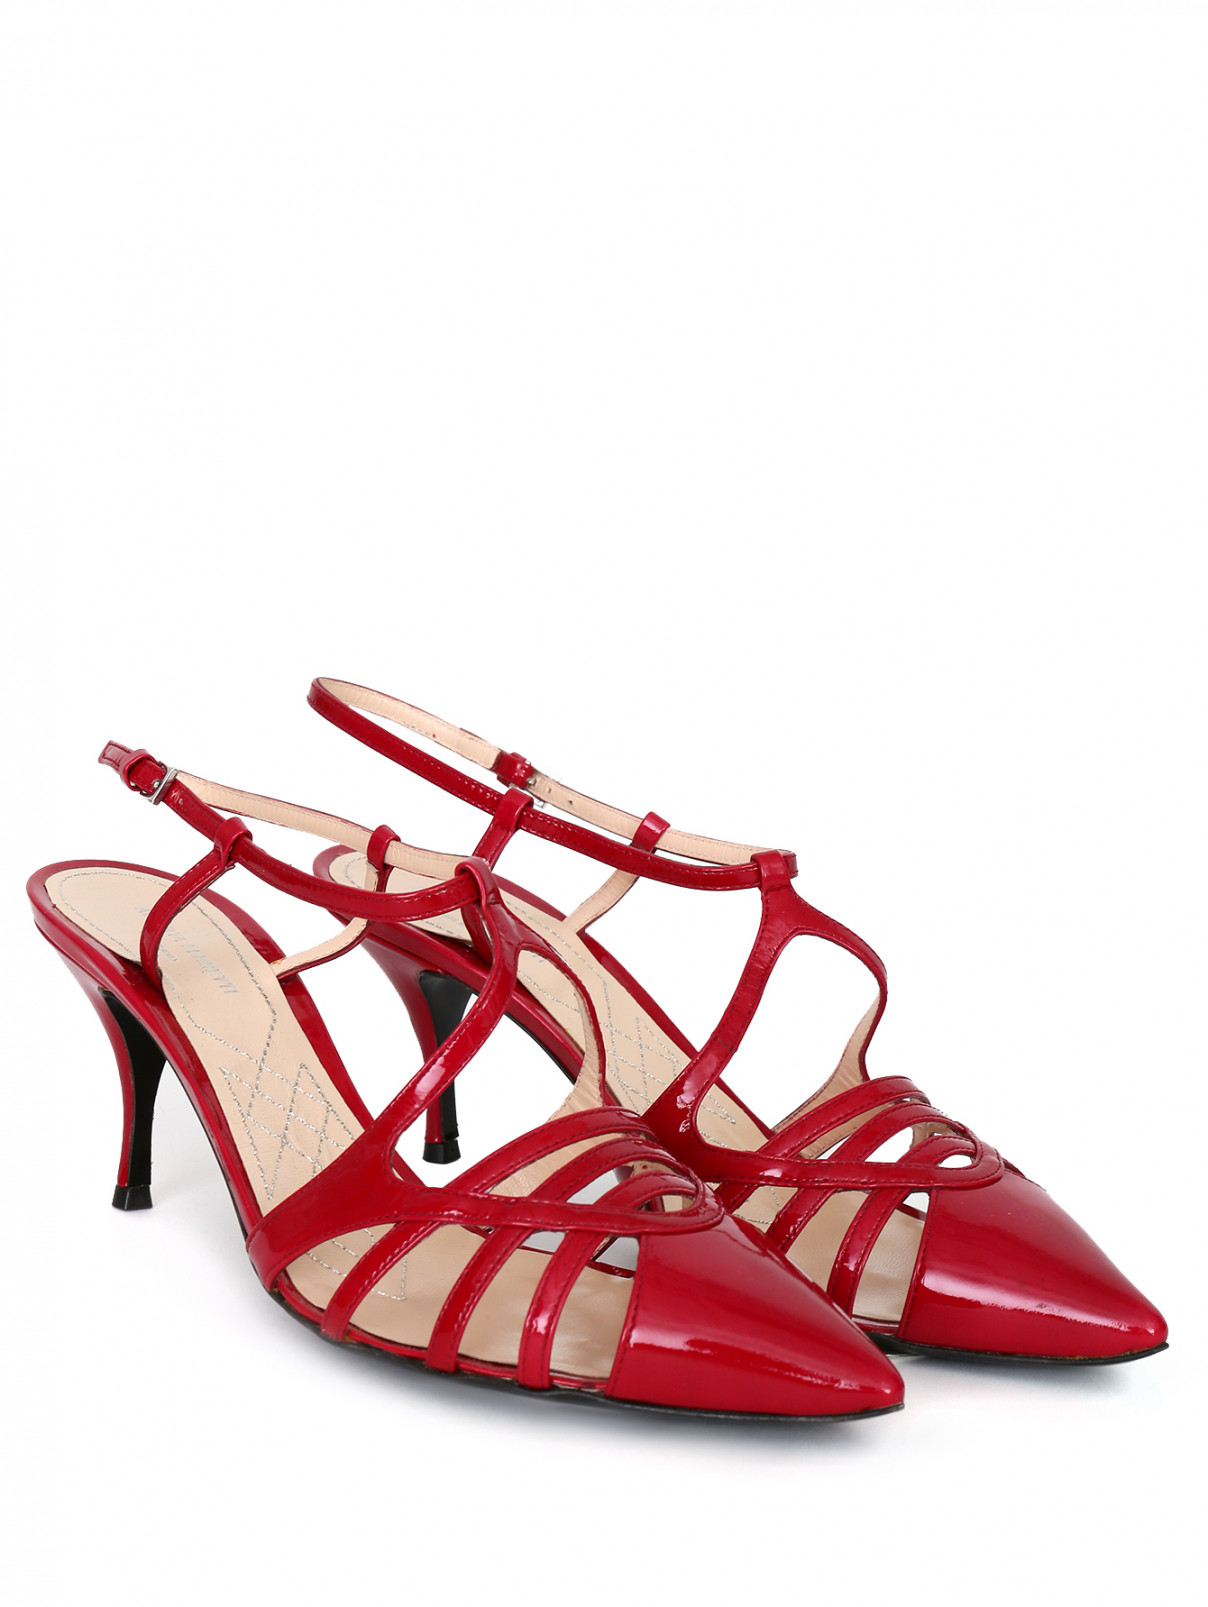 Туфли из лакированной кожи с перемычками Alberta Ferretti  –  Общий вид  – Цвет:  Красный